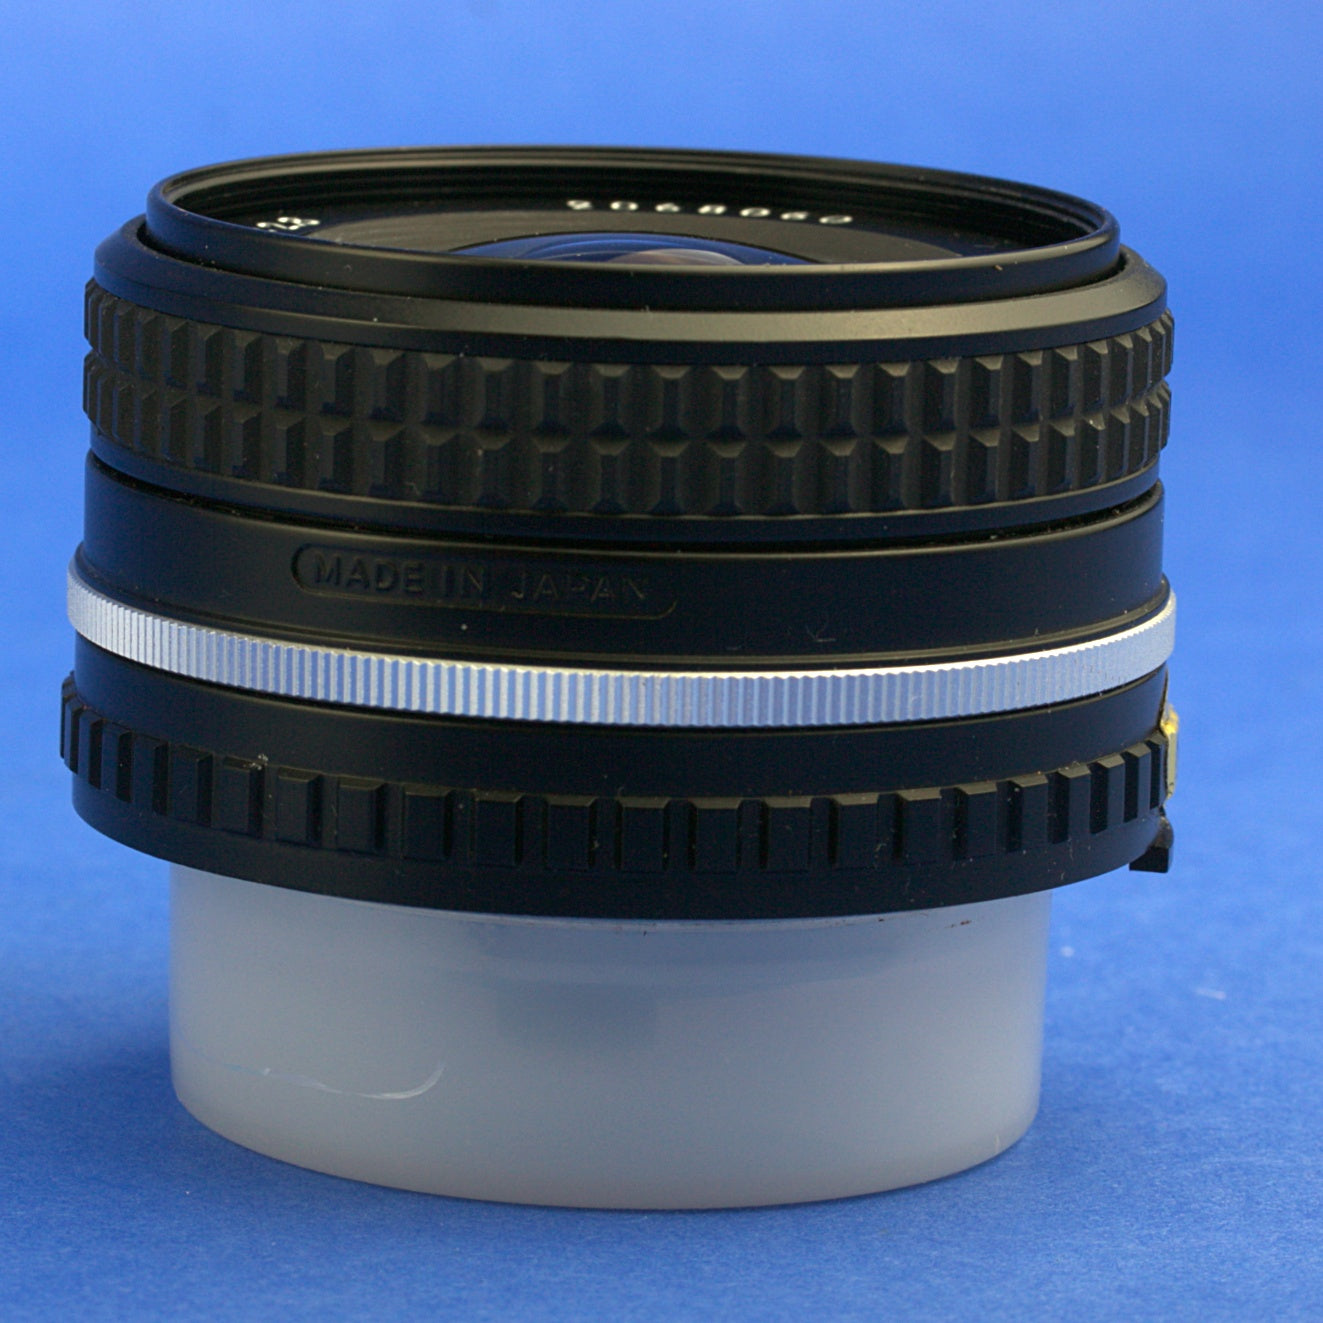 Nikon 28mm 2.8 Series E Lens Mint Condition